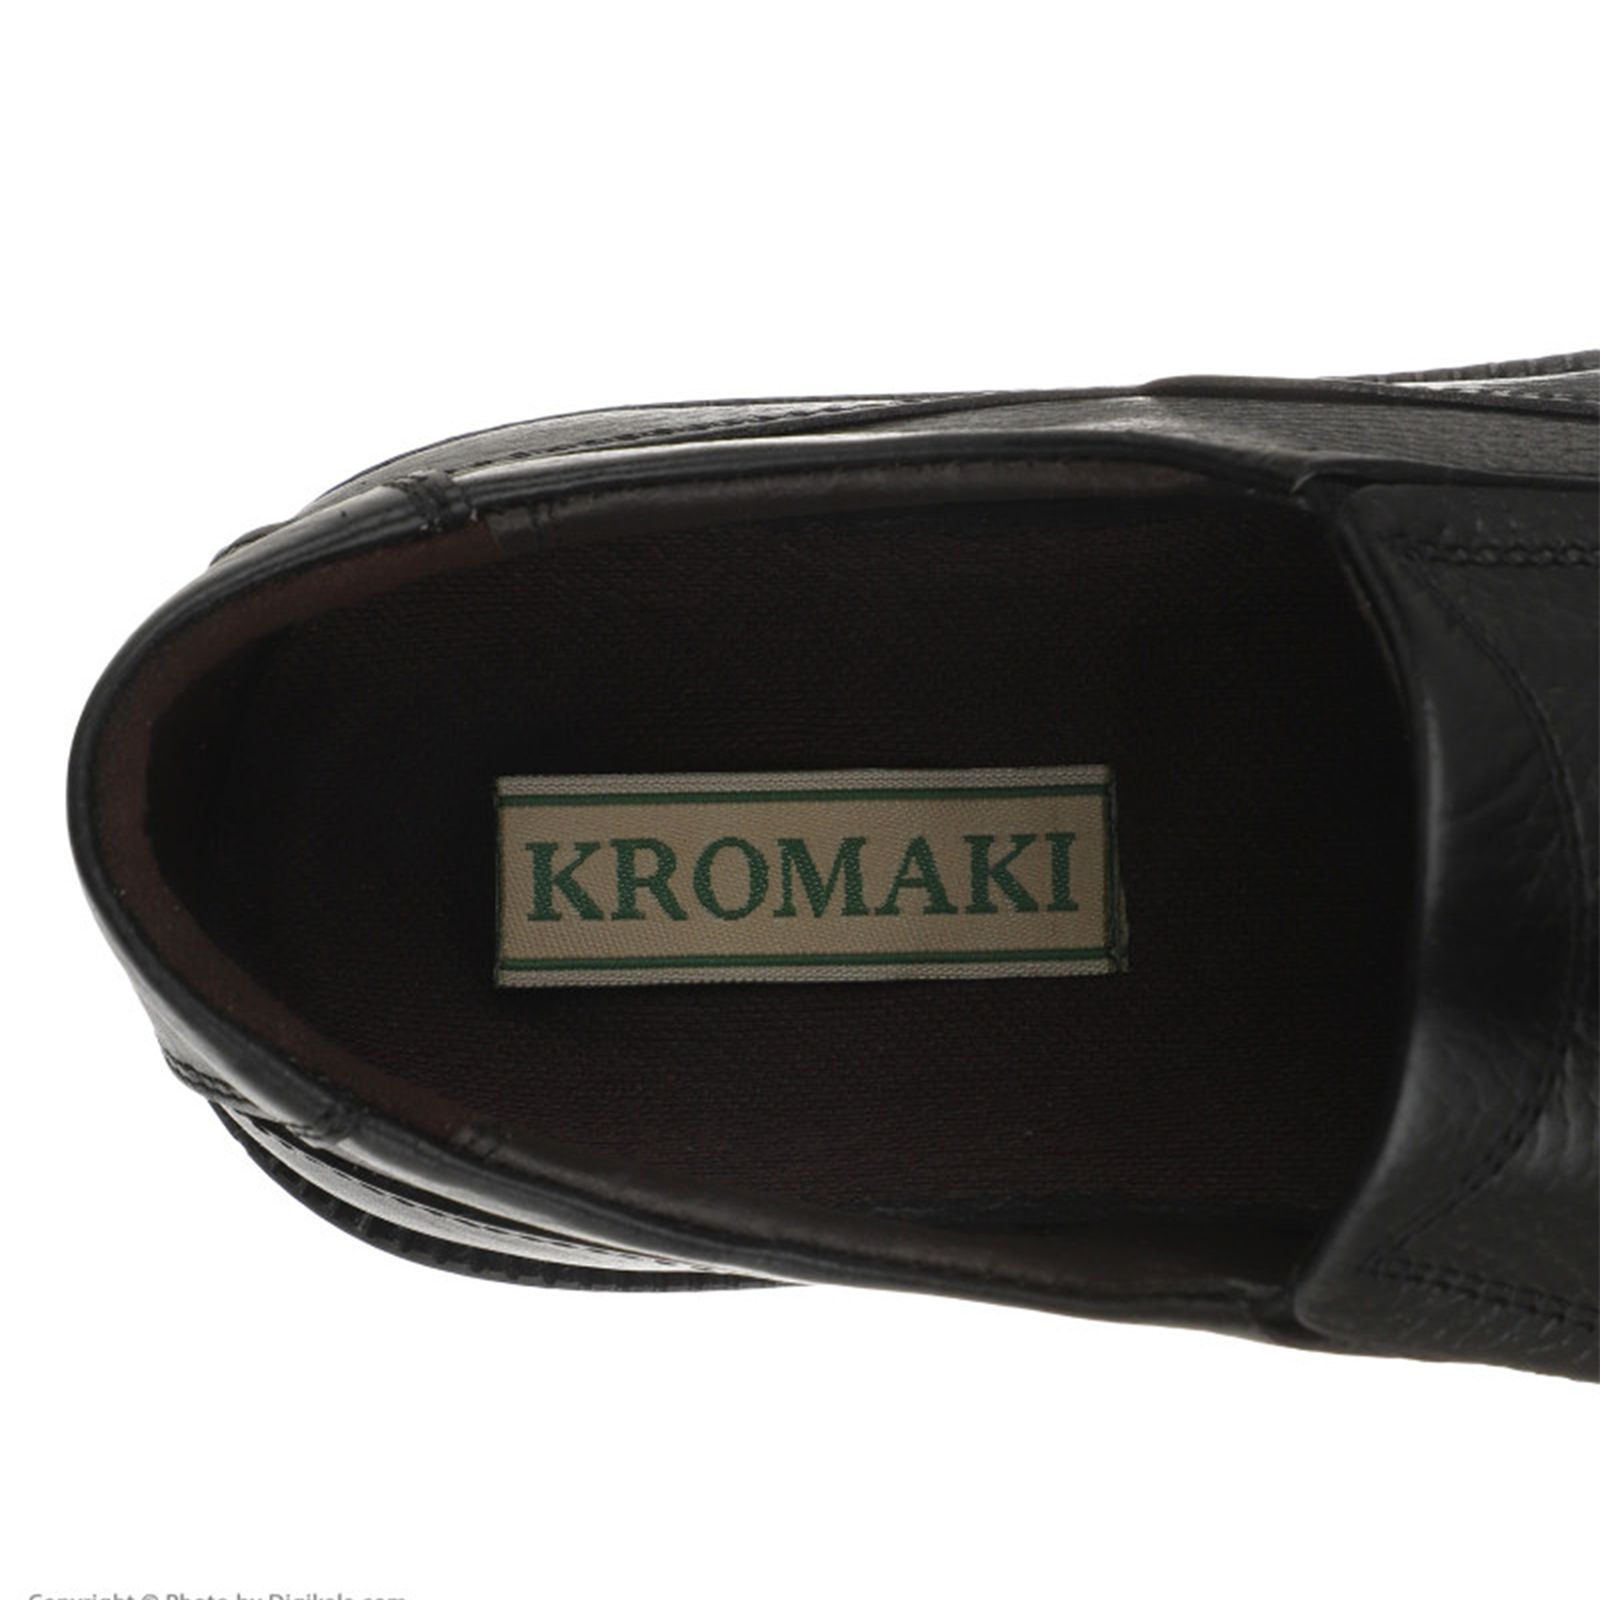 کفش مردانه کروماکی مدل KMS905 -  - 6